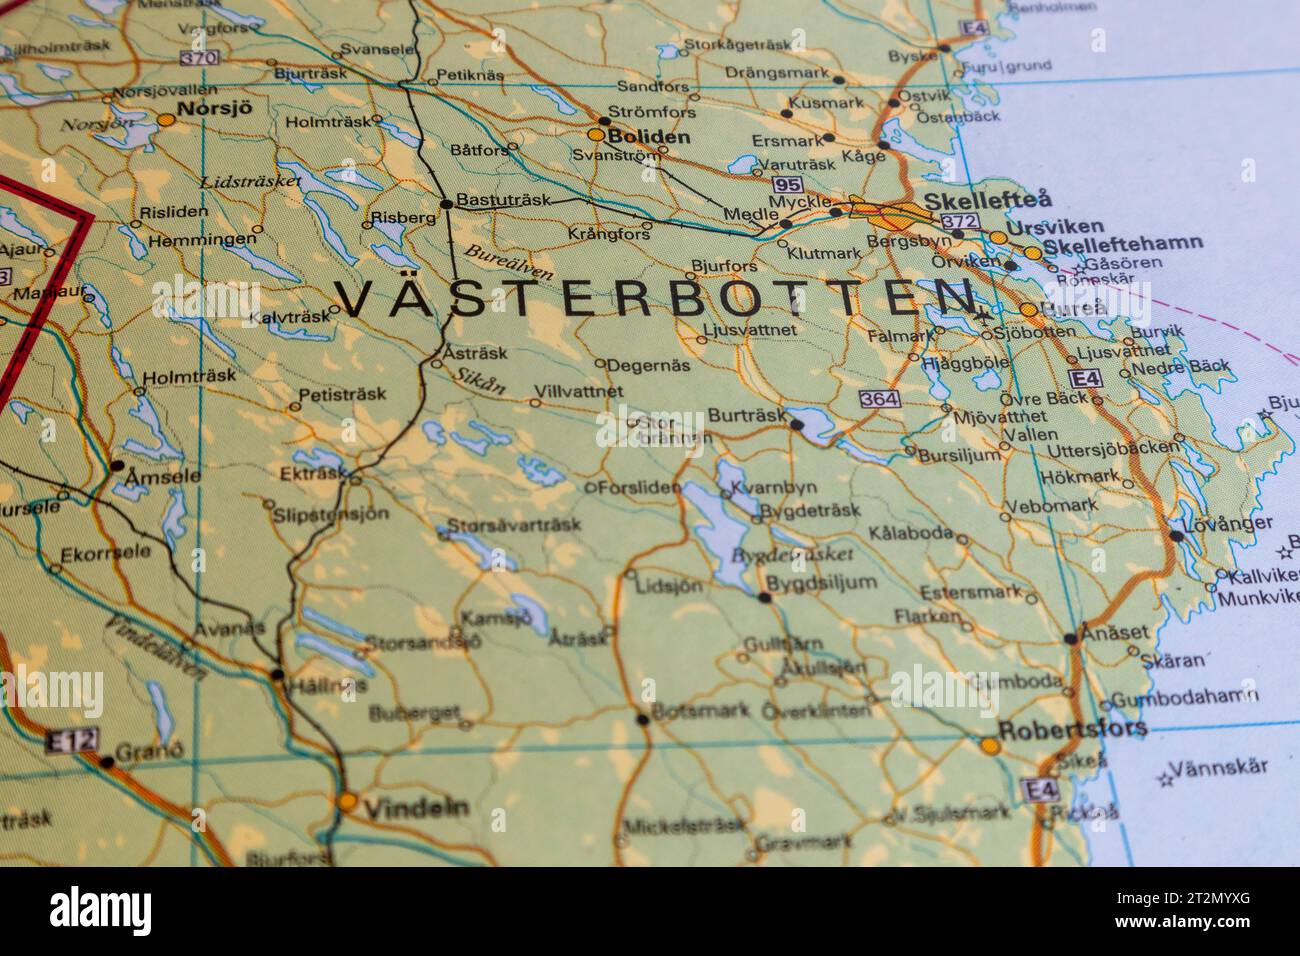 map of västerbotten Stock Photo